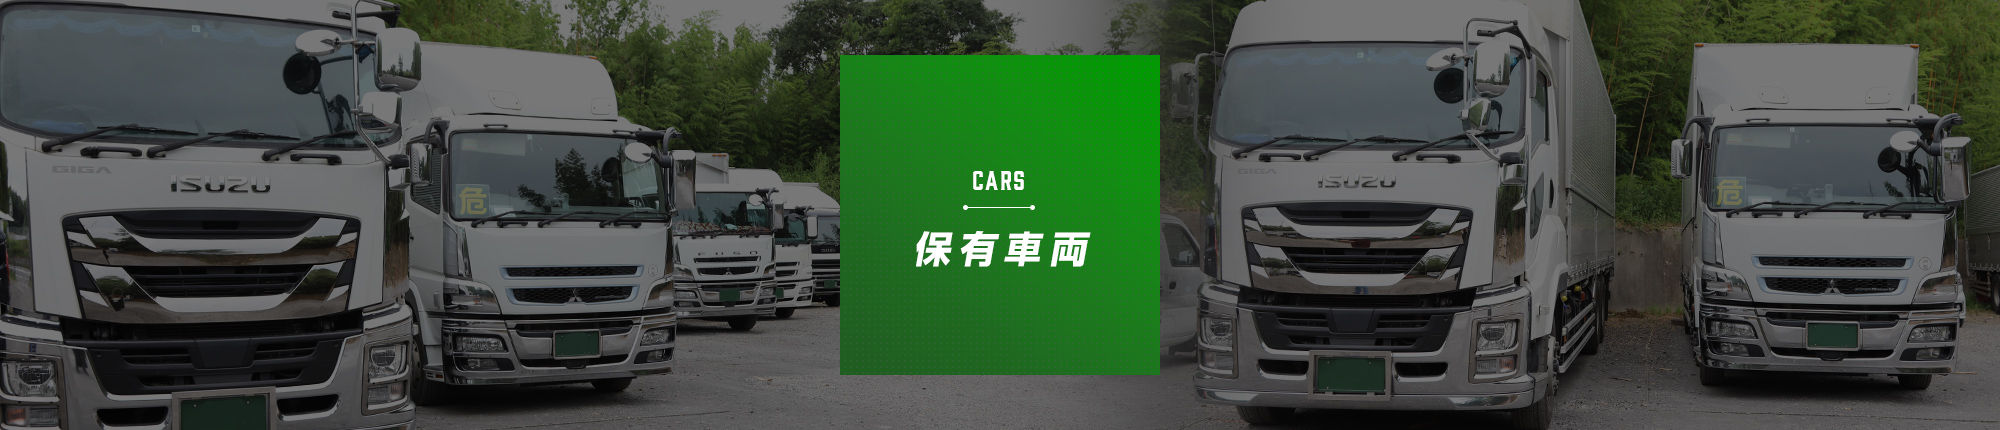 _bnr_cars